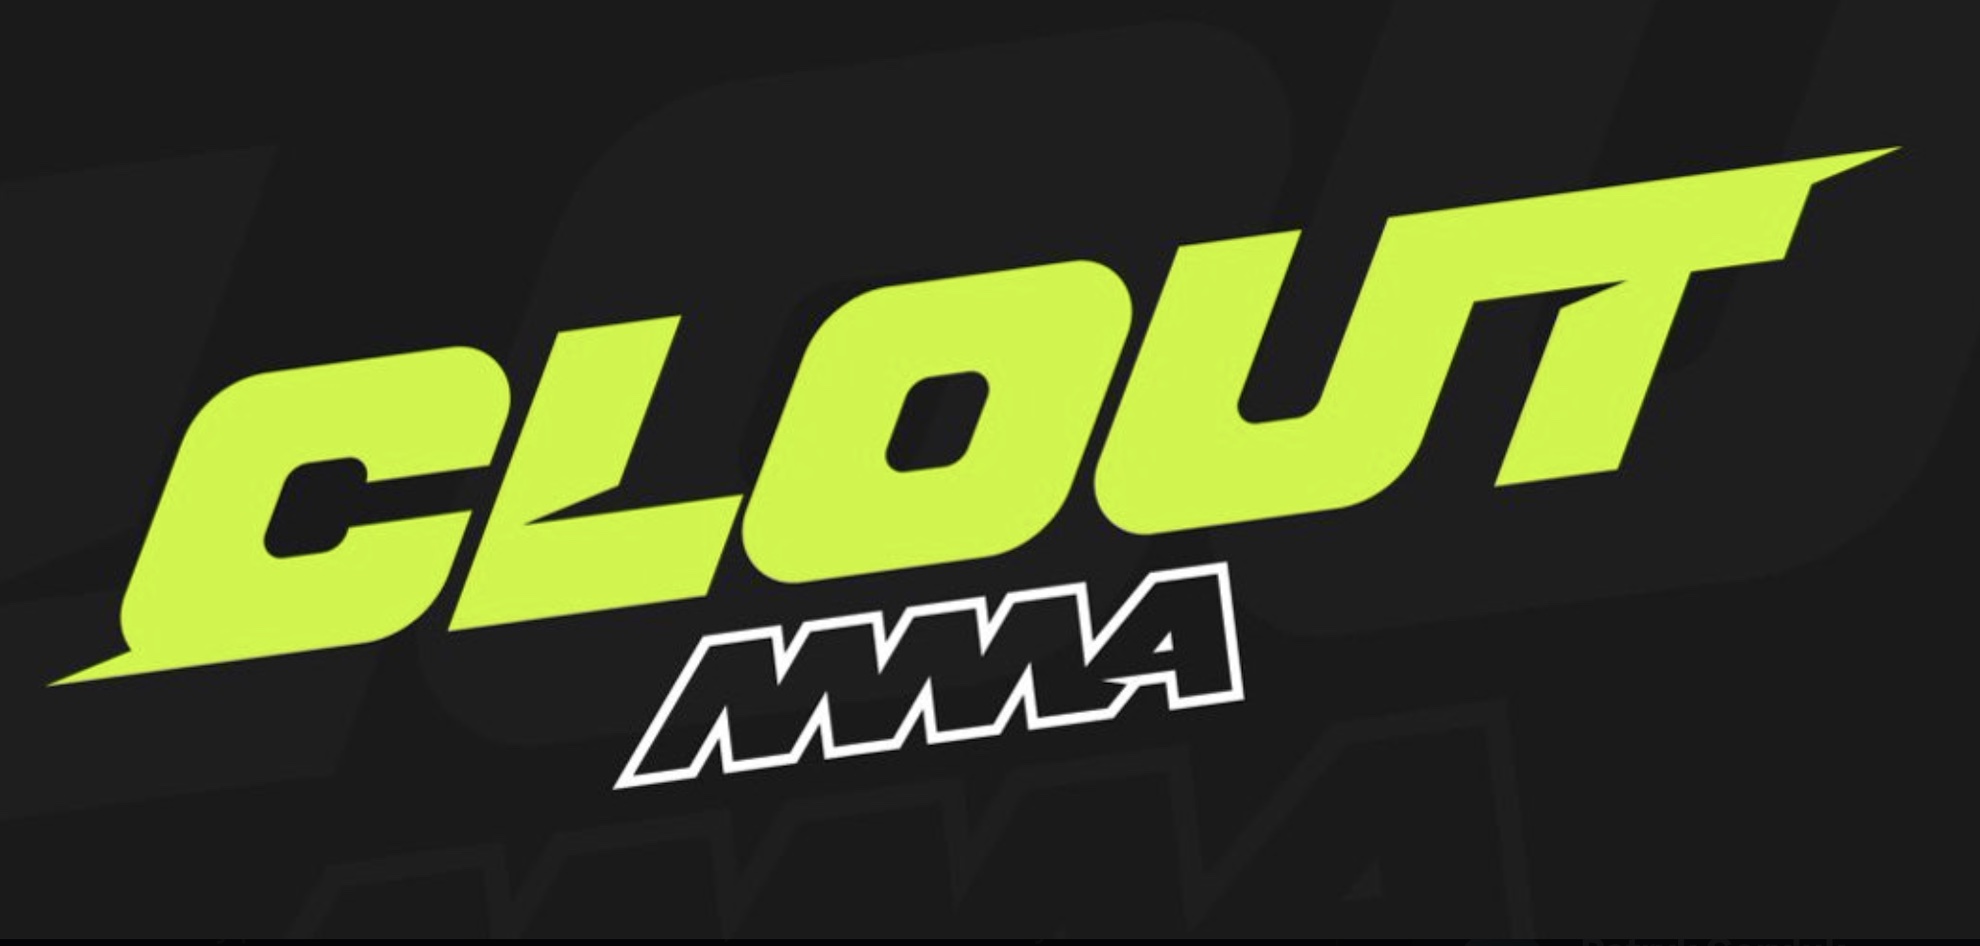 Clout MMA, logotyp organizacji, ilustracja do artykułu